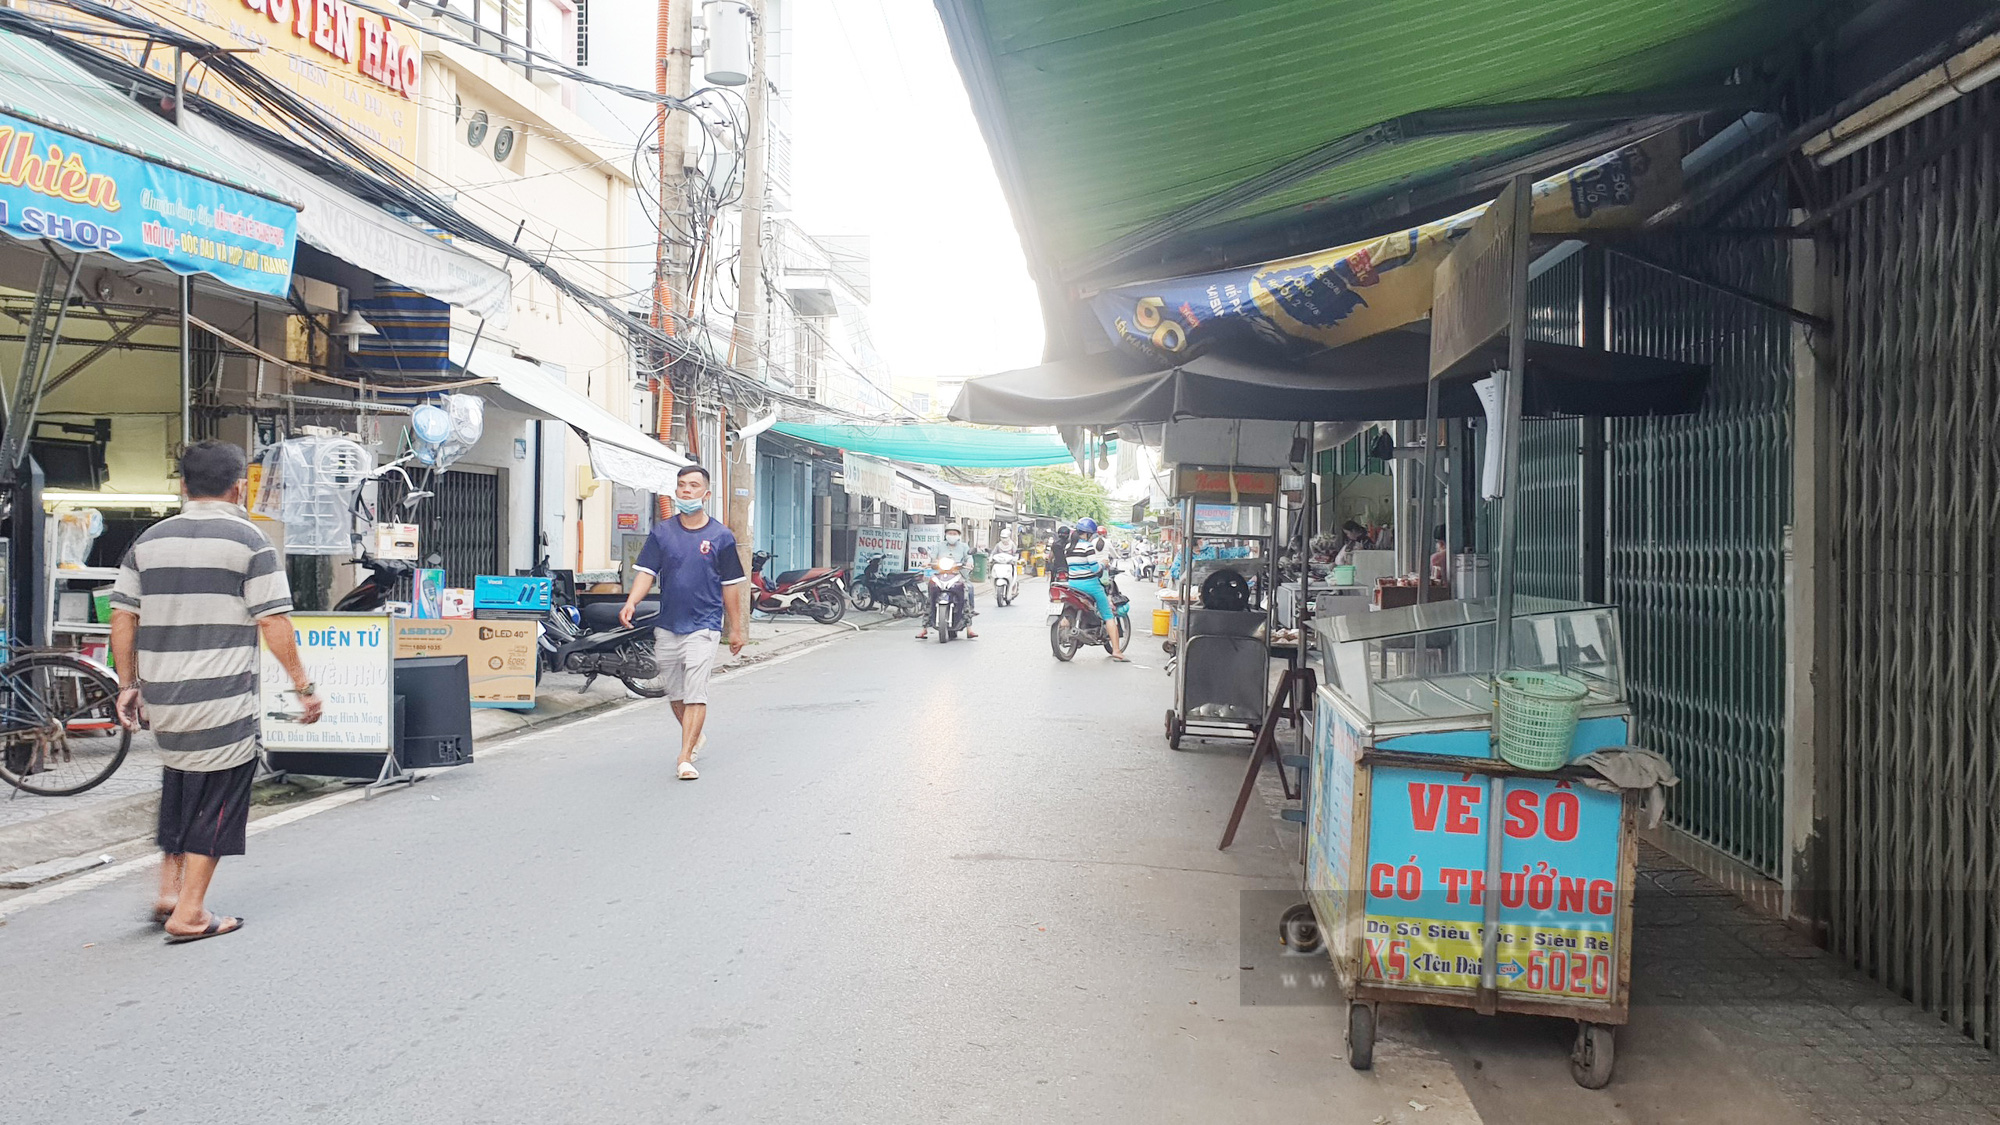 Ngày đầu giãn cách xã hội ở Cần Thơ: Chợ bắt đầu vắng khách, quán cà phê đóng cửa - Ảnh 1.